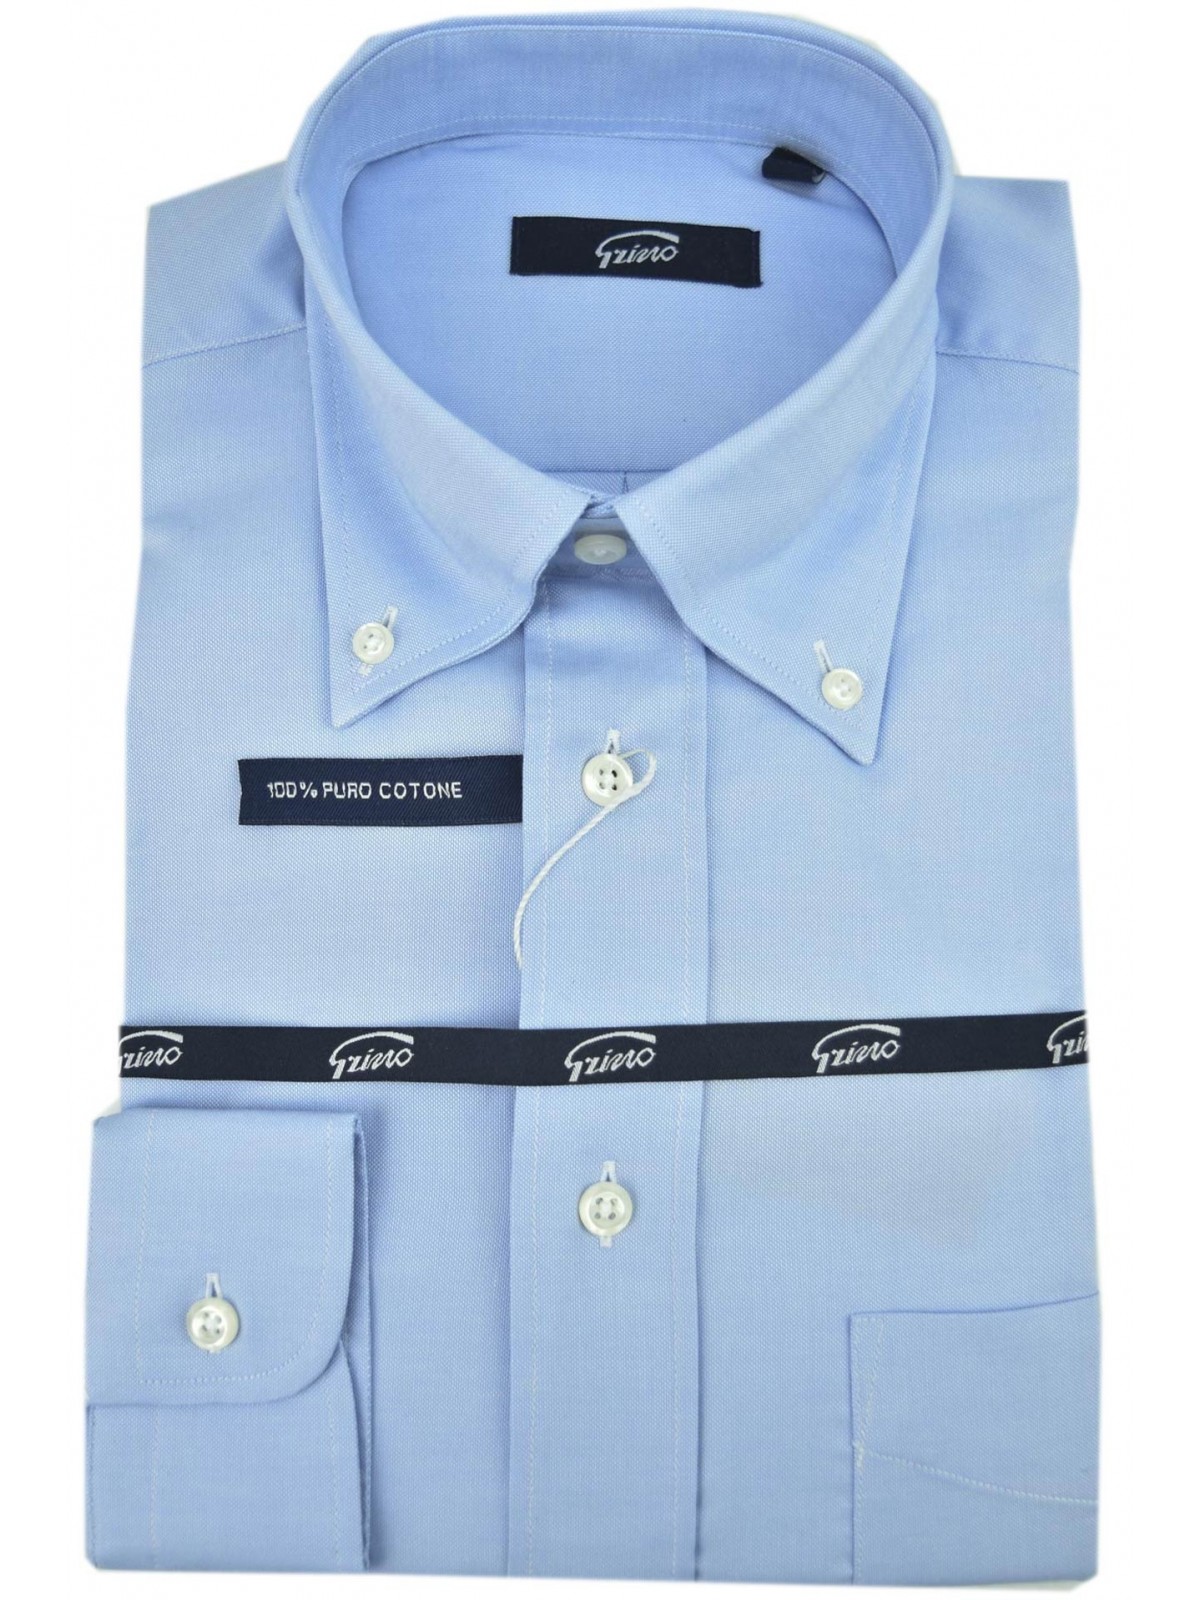 Klassisches hellblaues Oxford-Herrenhemd Italien-Kragen